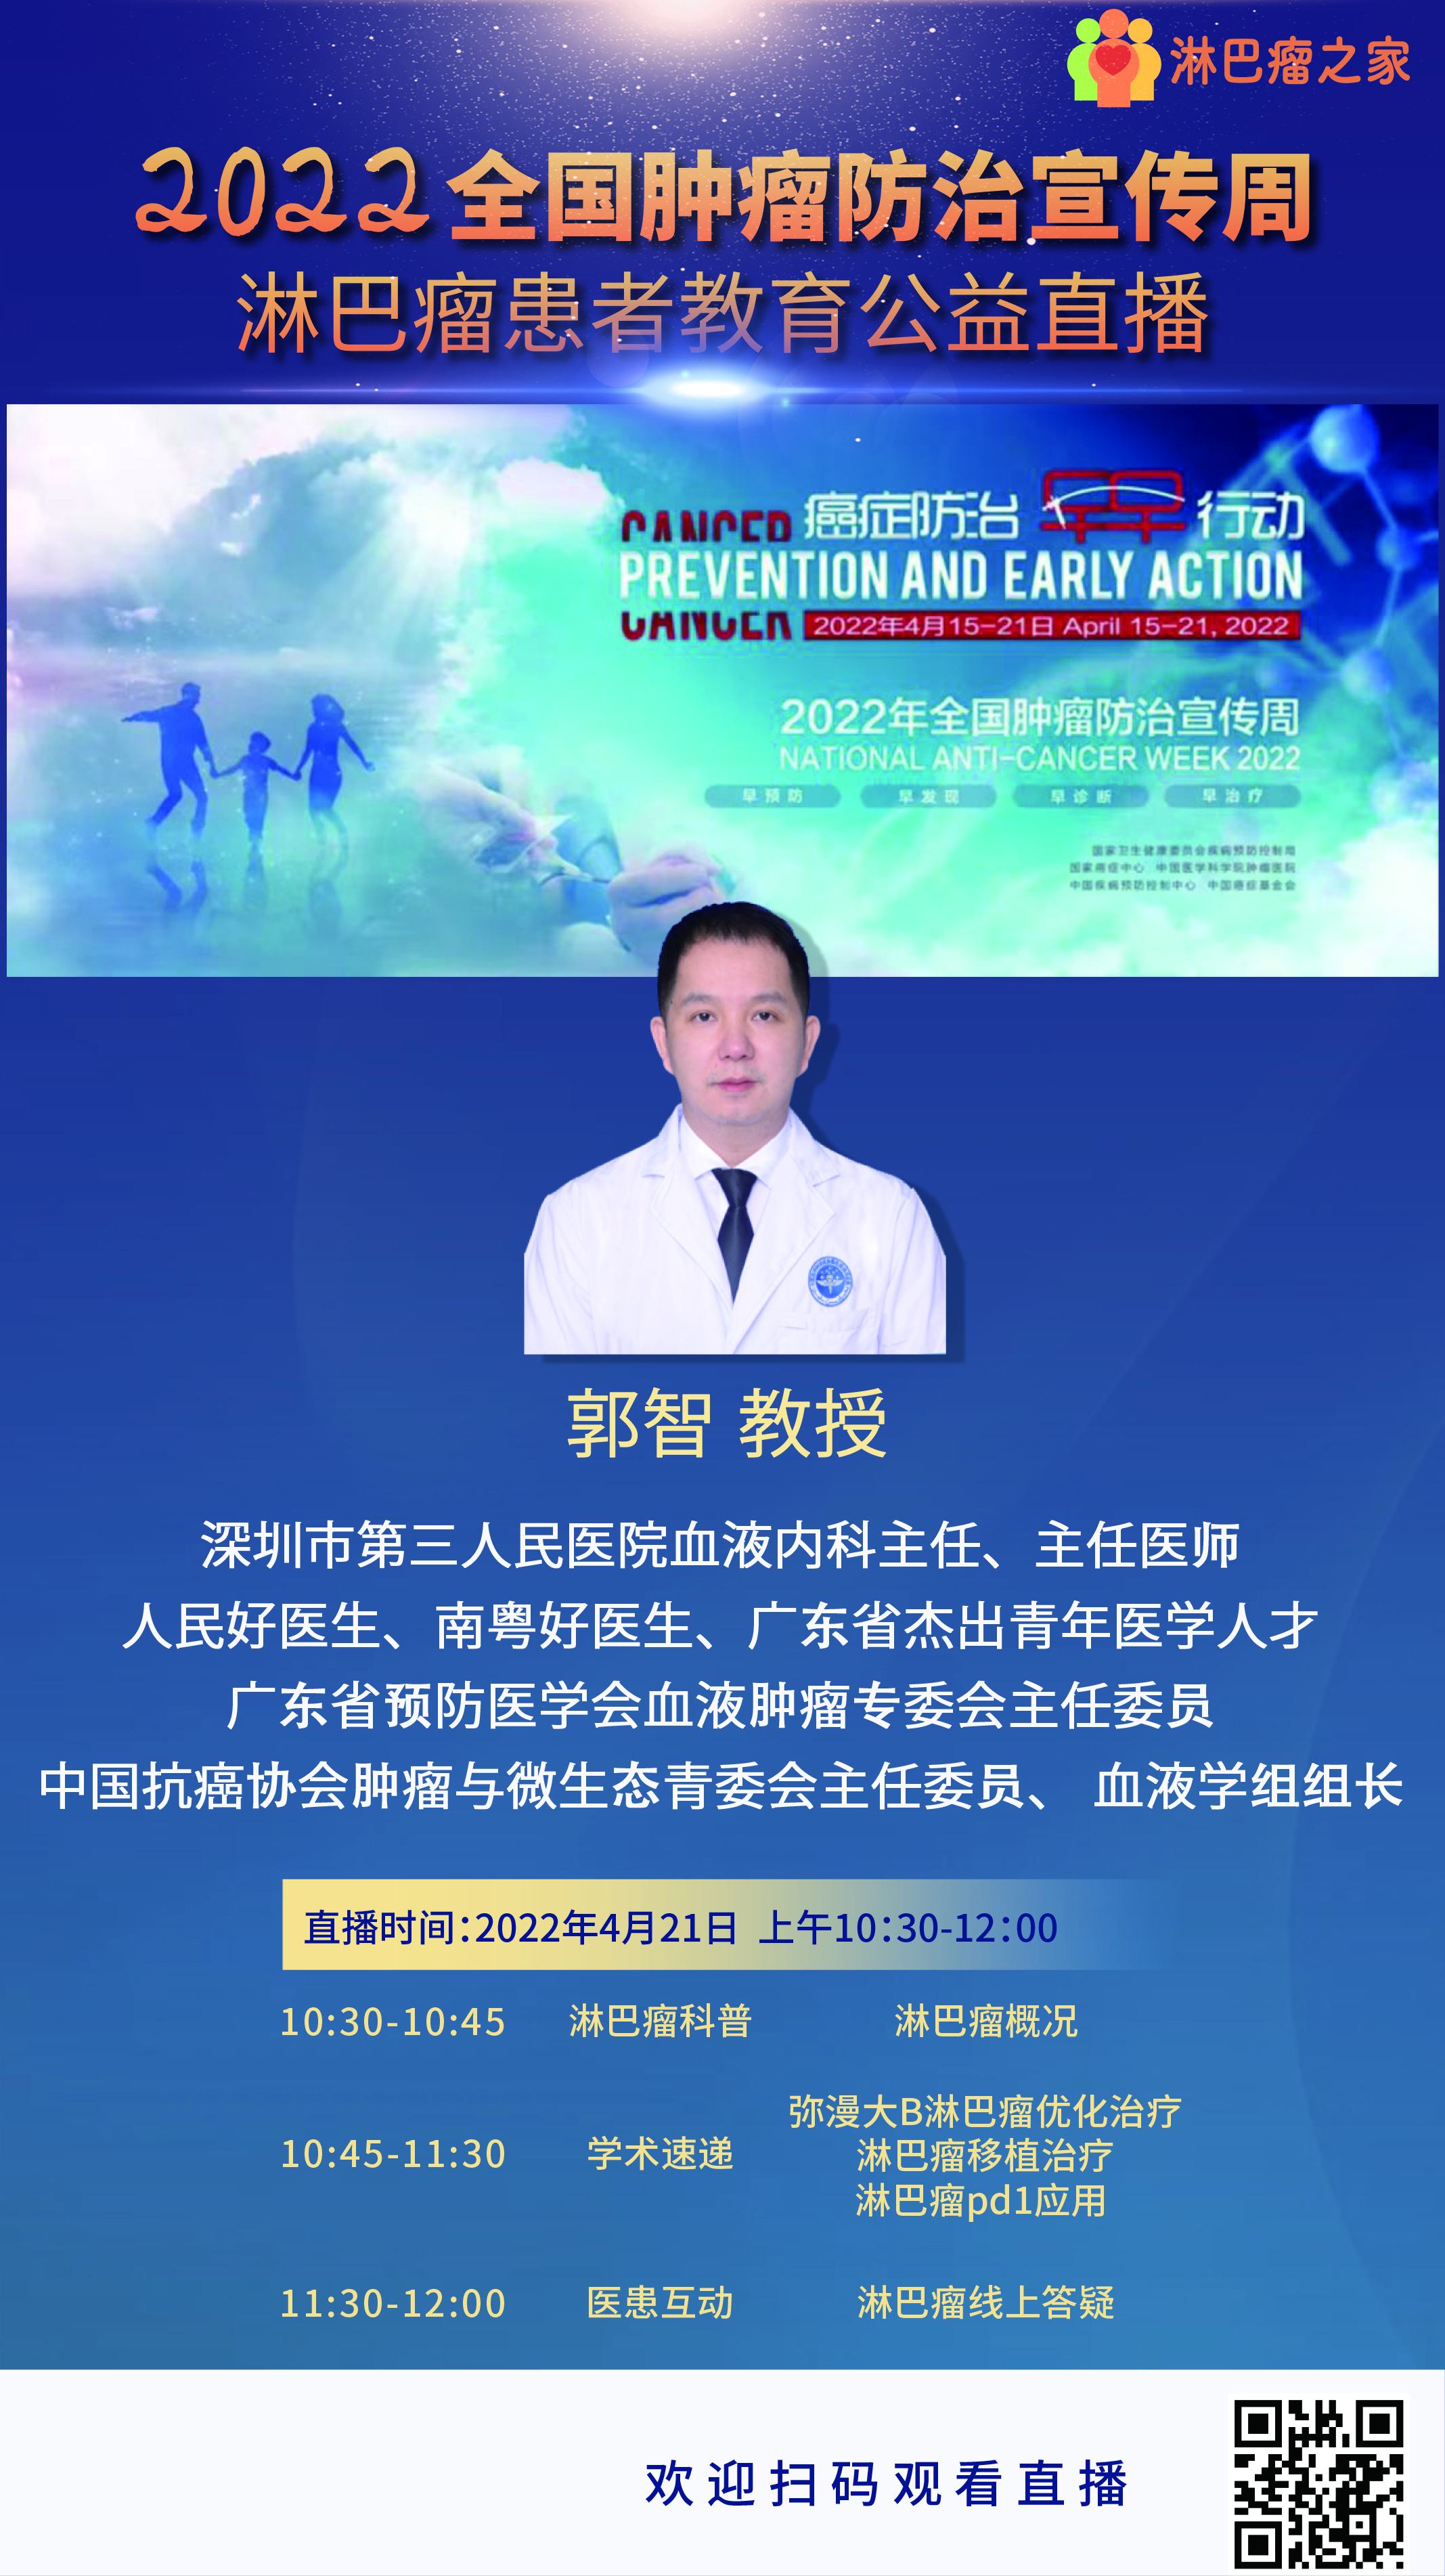 4月21日深圳市第三人民医院为淋巴瘤患者开通线上公益直播